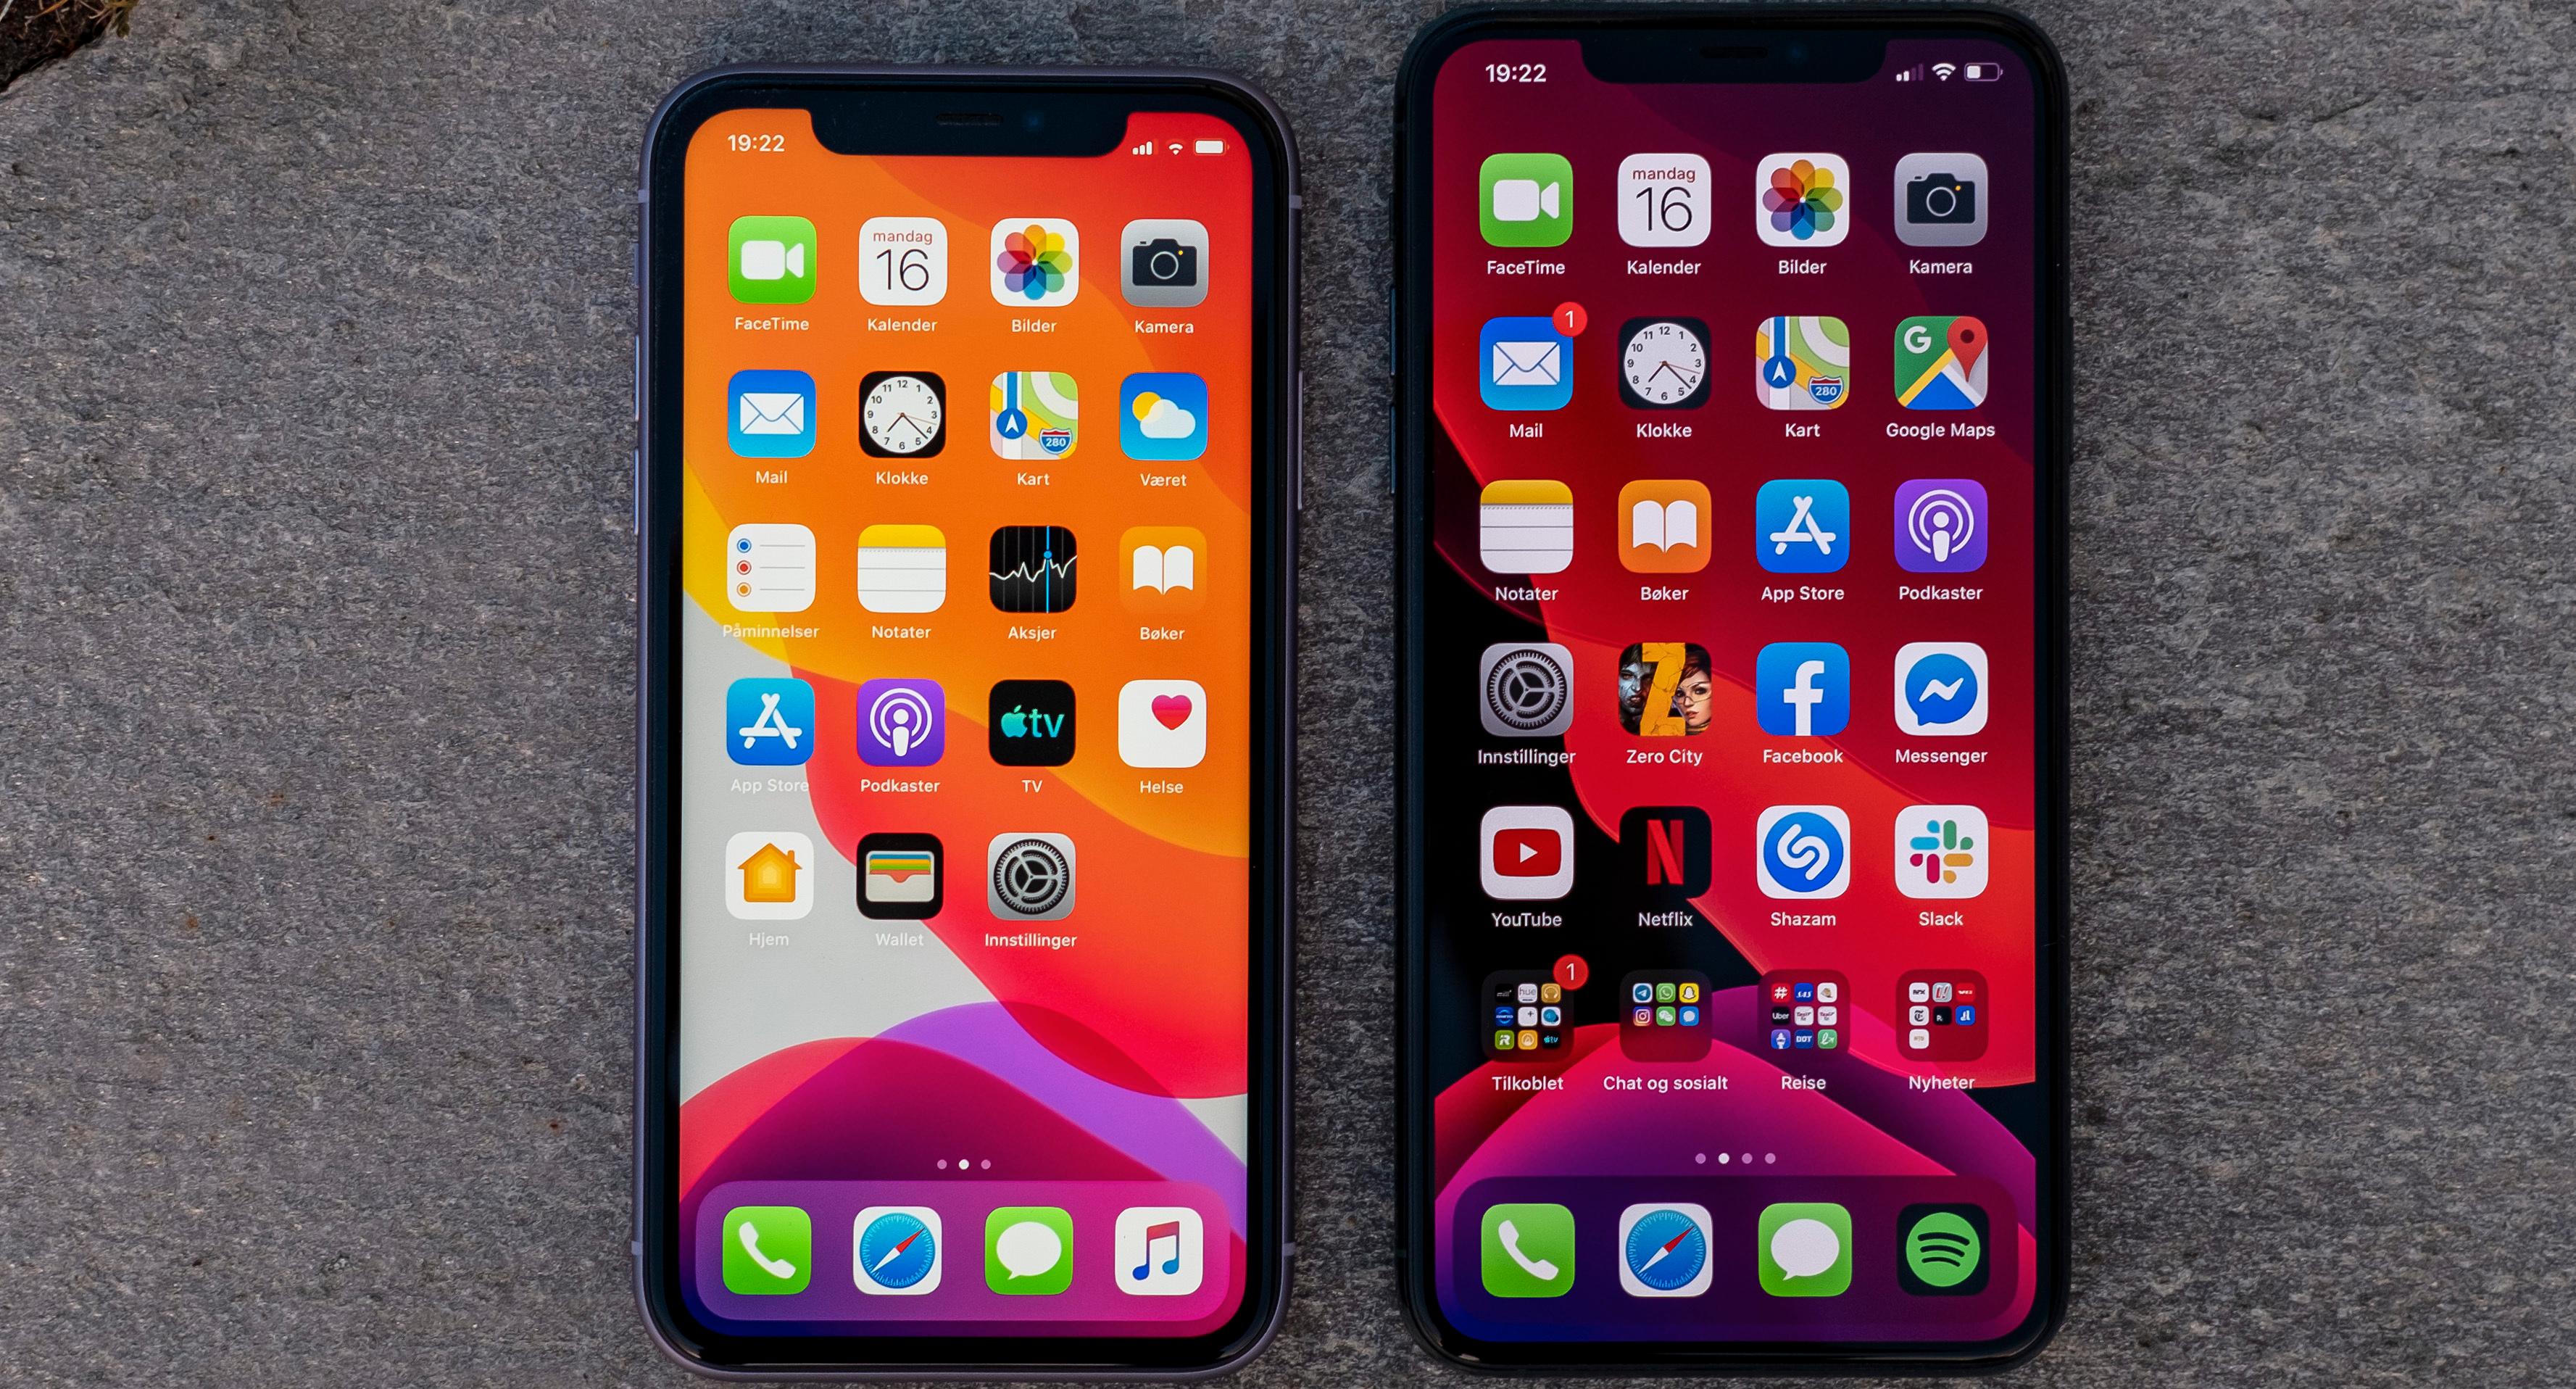 iPhone 11, til venstre, har også meget god lyd, men den har vesentlig svakere spesifisert skjerm, med under full-HD-oppløsning og et LCD-panel som slipper gjennom mye mindre lys enn det Pro-modellenes AMOLED-skjermer kan gi fra seg.